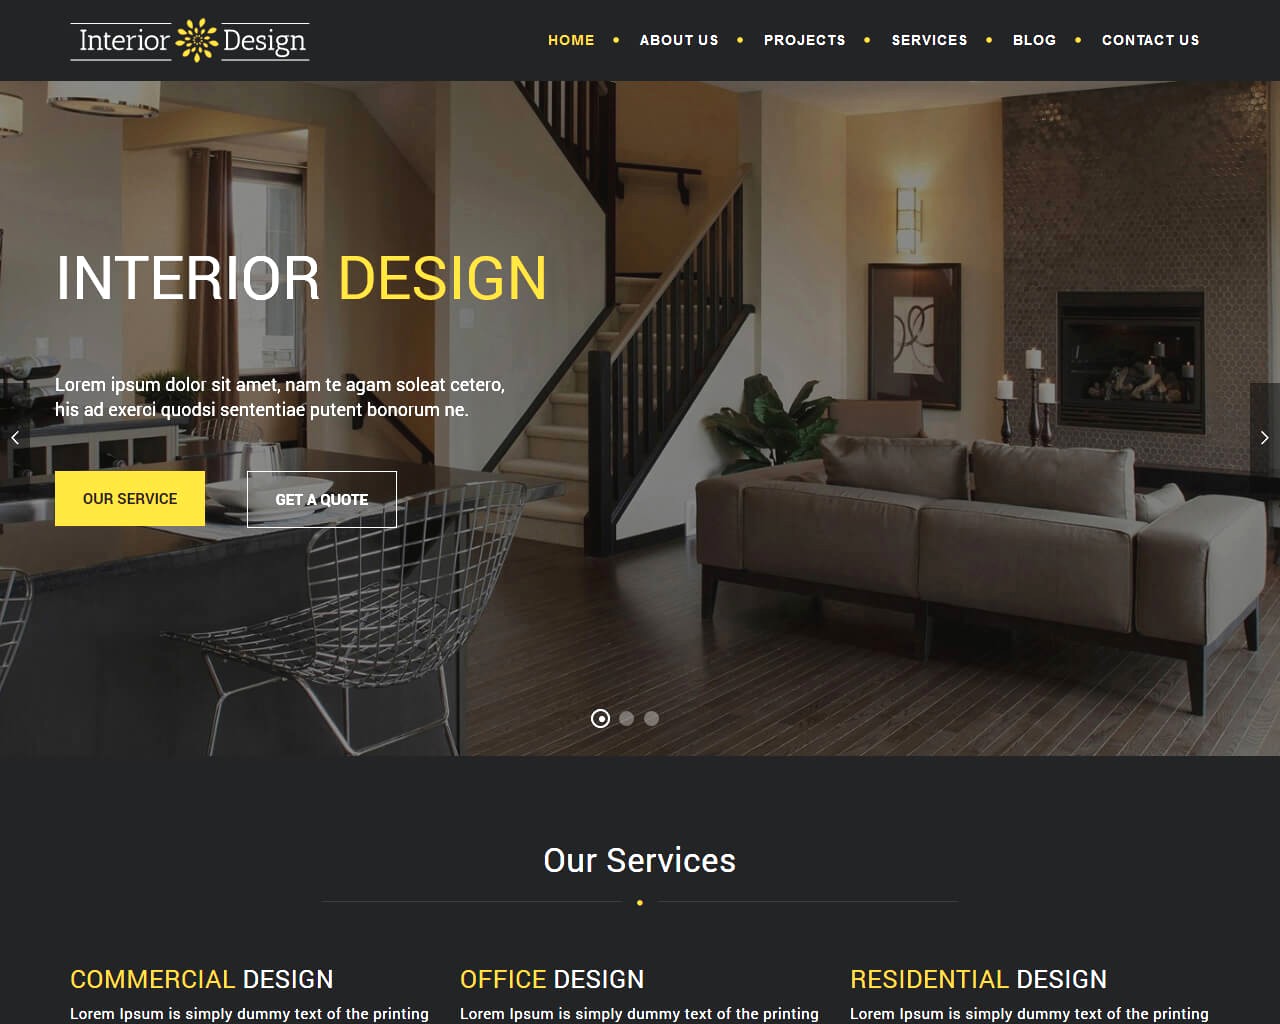 Interior Design Co là mẫu webiste nội thất sở hữu nhiều tính năng vượt trội.